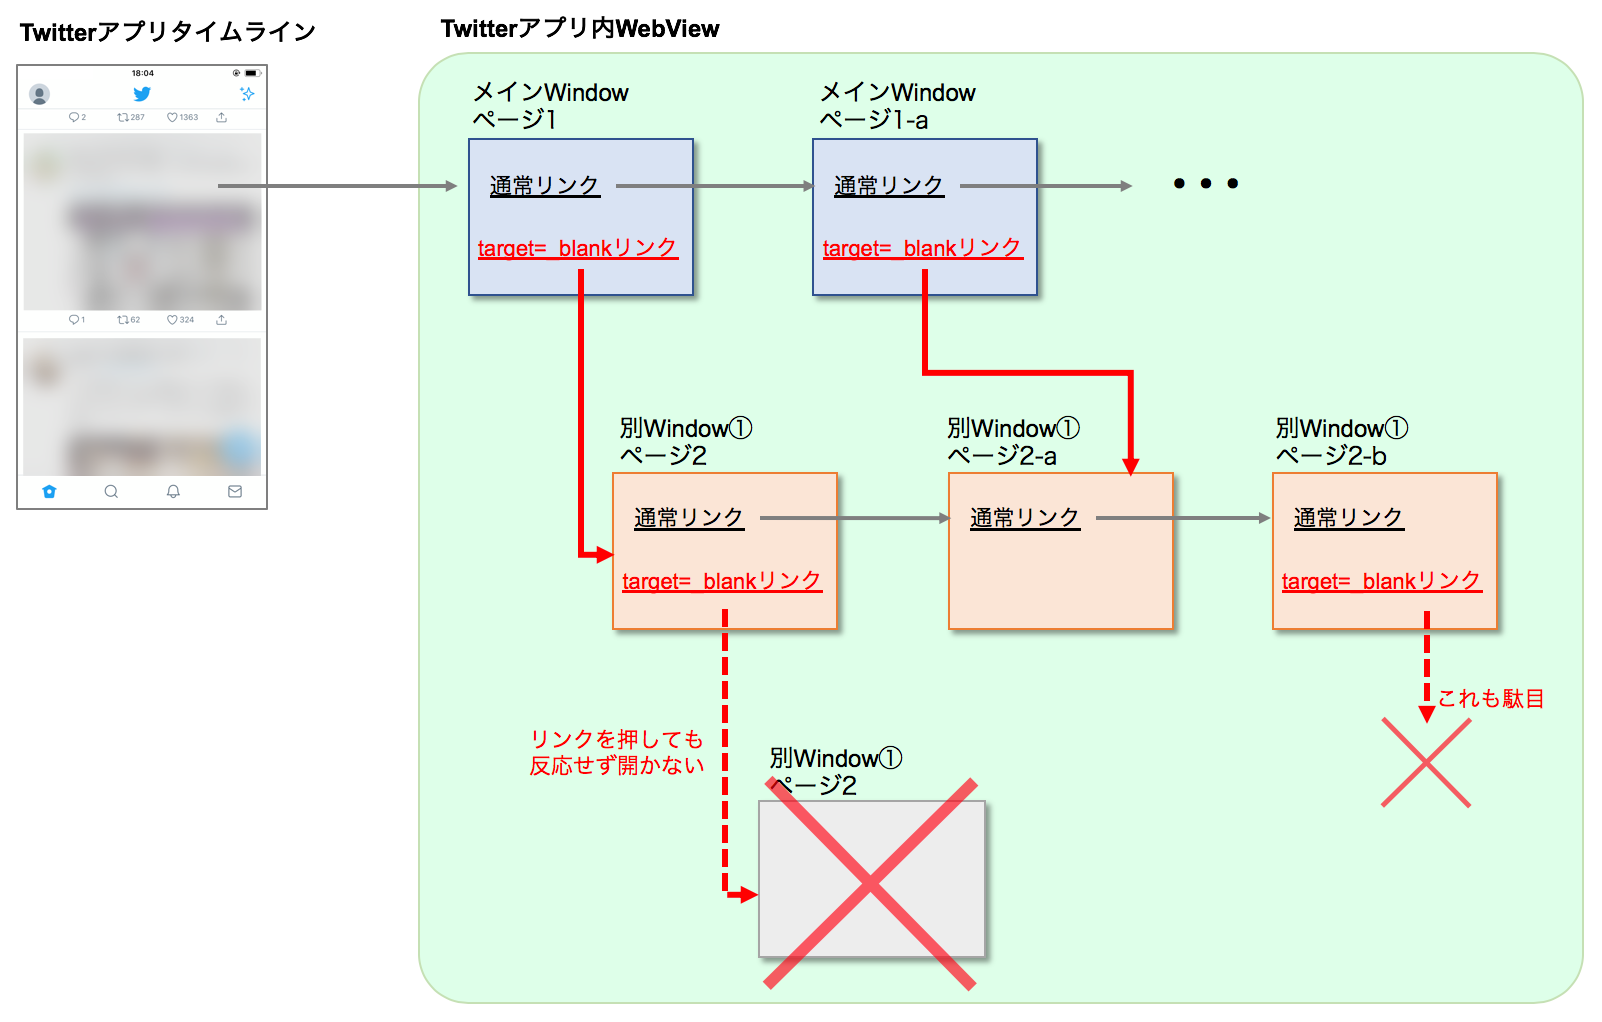 Iosアプリ内webviewでページリンクが開かなくなる問題について By Hiroshi Ohtake Paronym Medium